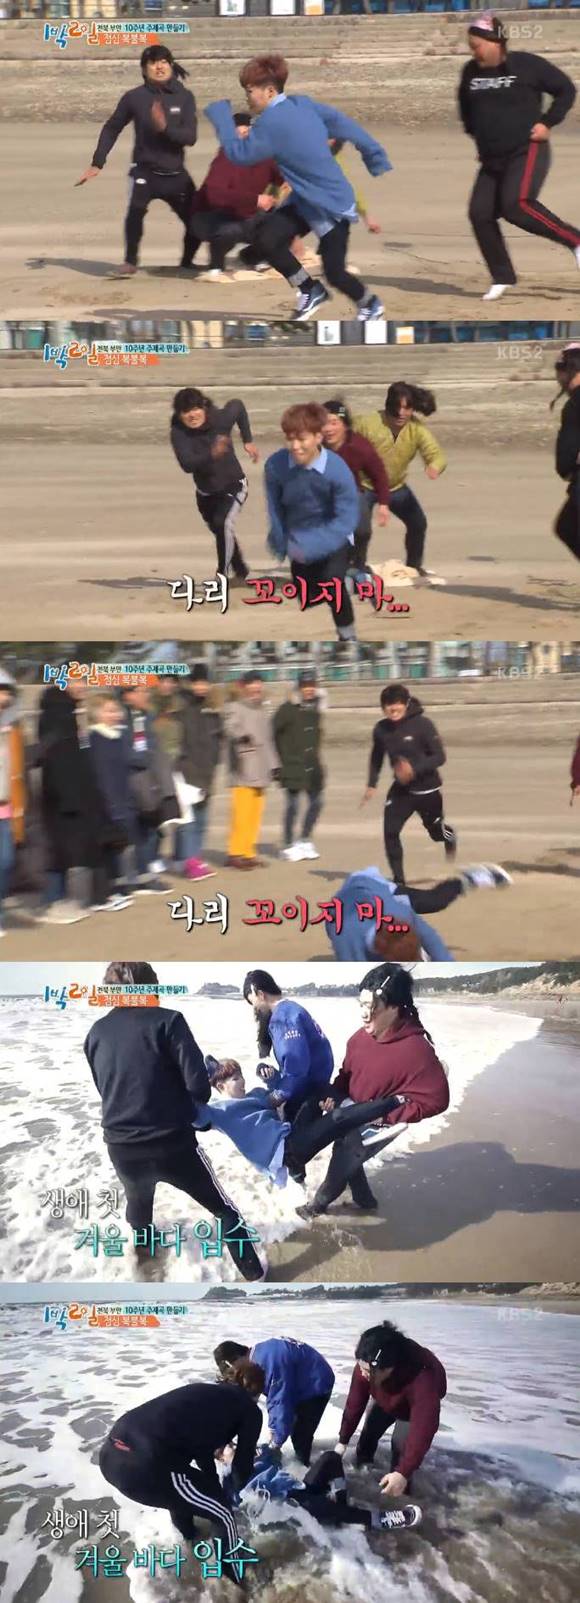 마음이 급했던 찬혁은 다리가 꼬이면서 처음으로 겨울바다에 입수했다. /KBS2 1박2일 방송 캡처